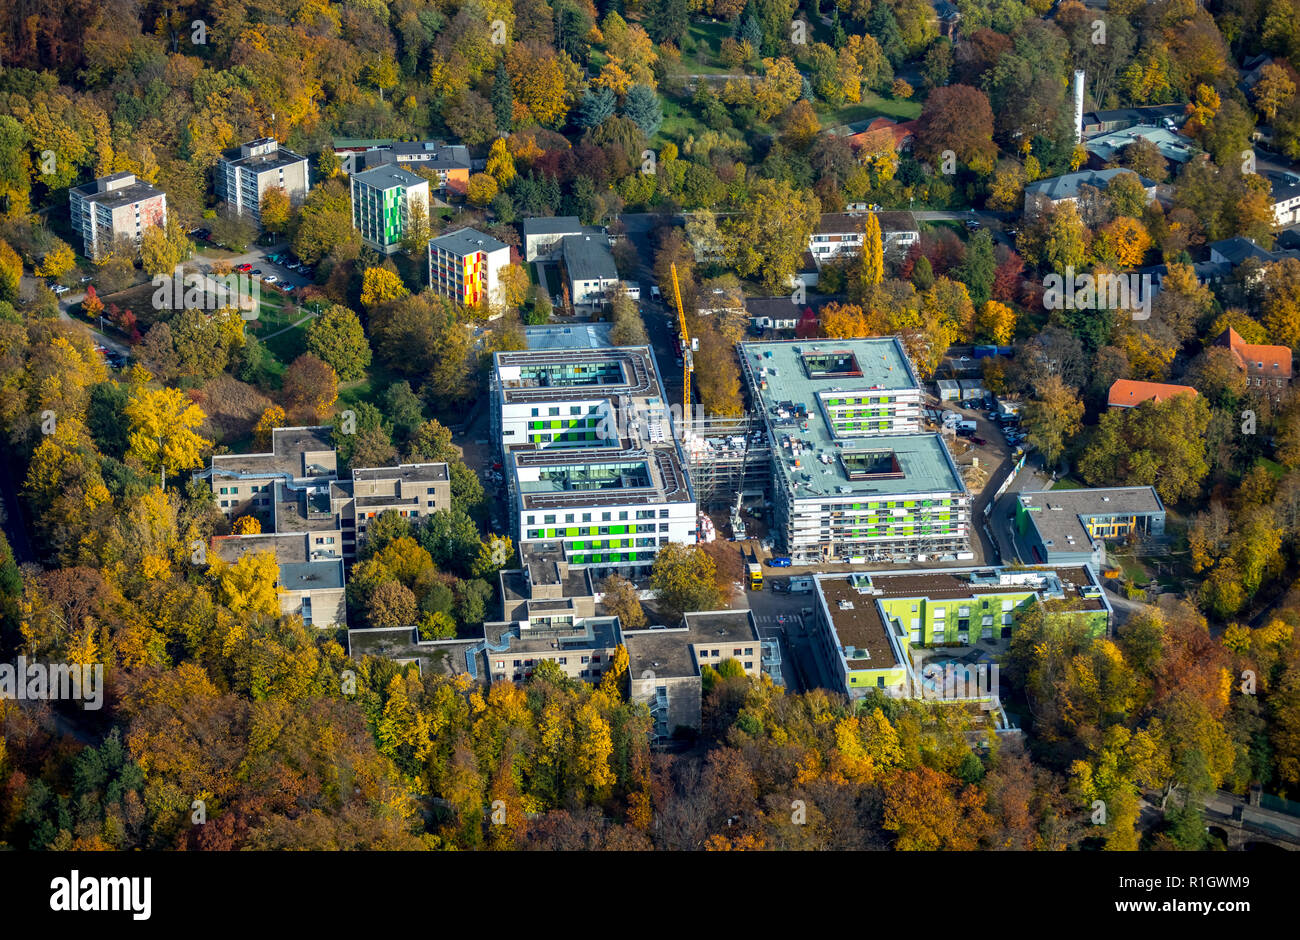 Foto aérea, en el Hospital de LVR Hardt, Grafenberg, State Hospital, trabajo e integración eV, Dusseldorf, Renania, Renania del Norte-Westfalia. Foto de stock